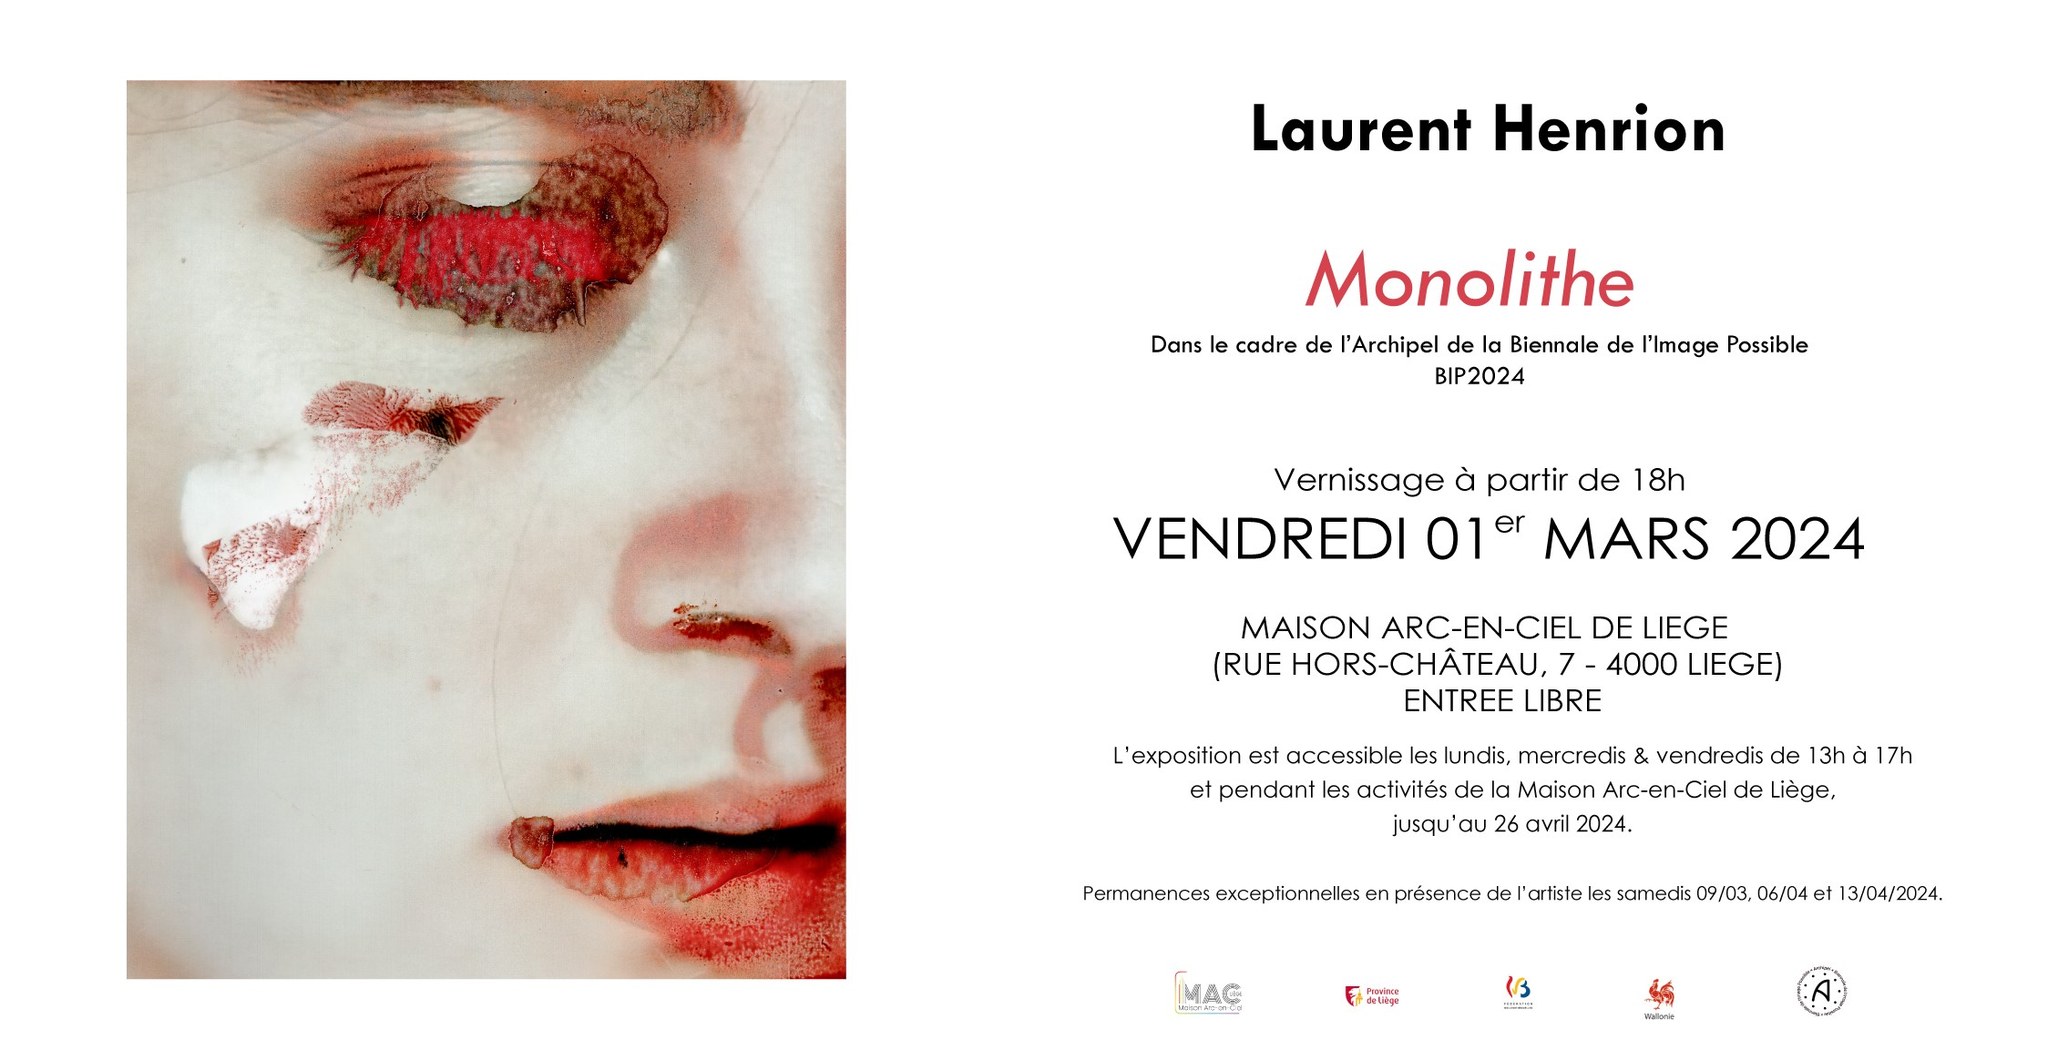 Vernissage expo : Monolithe - Laurent Henrion (Archipel / BIP 2024) à La Maison Arc-en-ciel de LIEGE